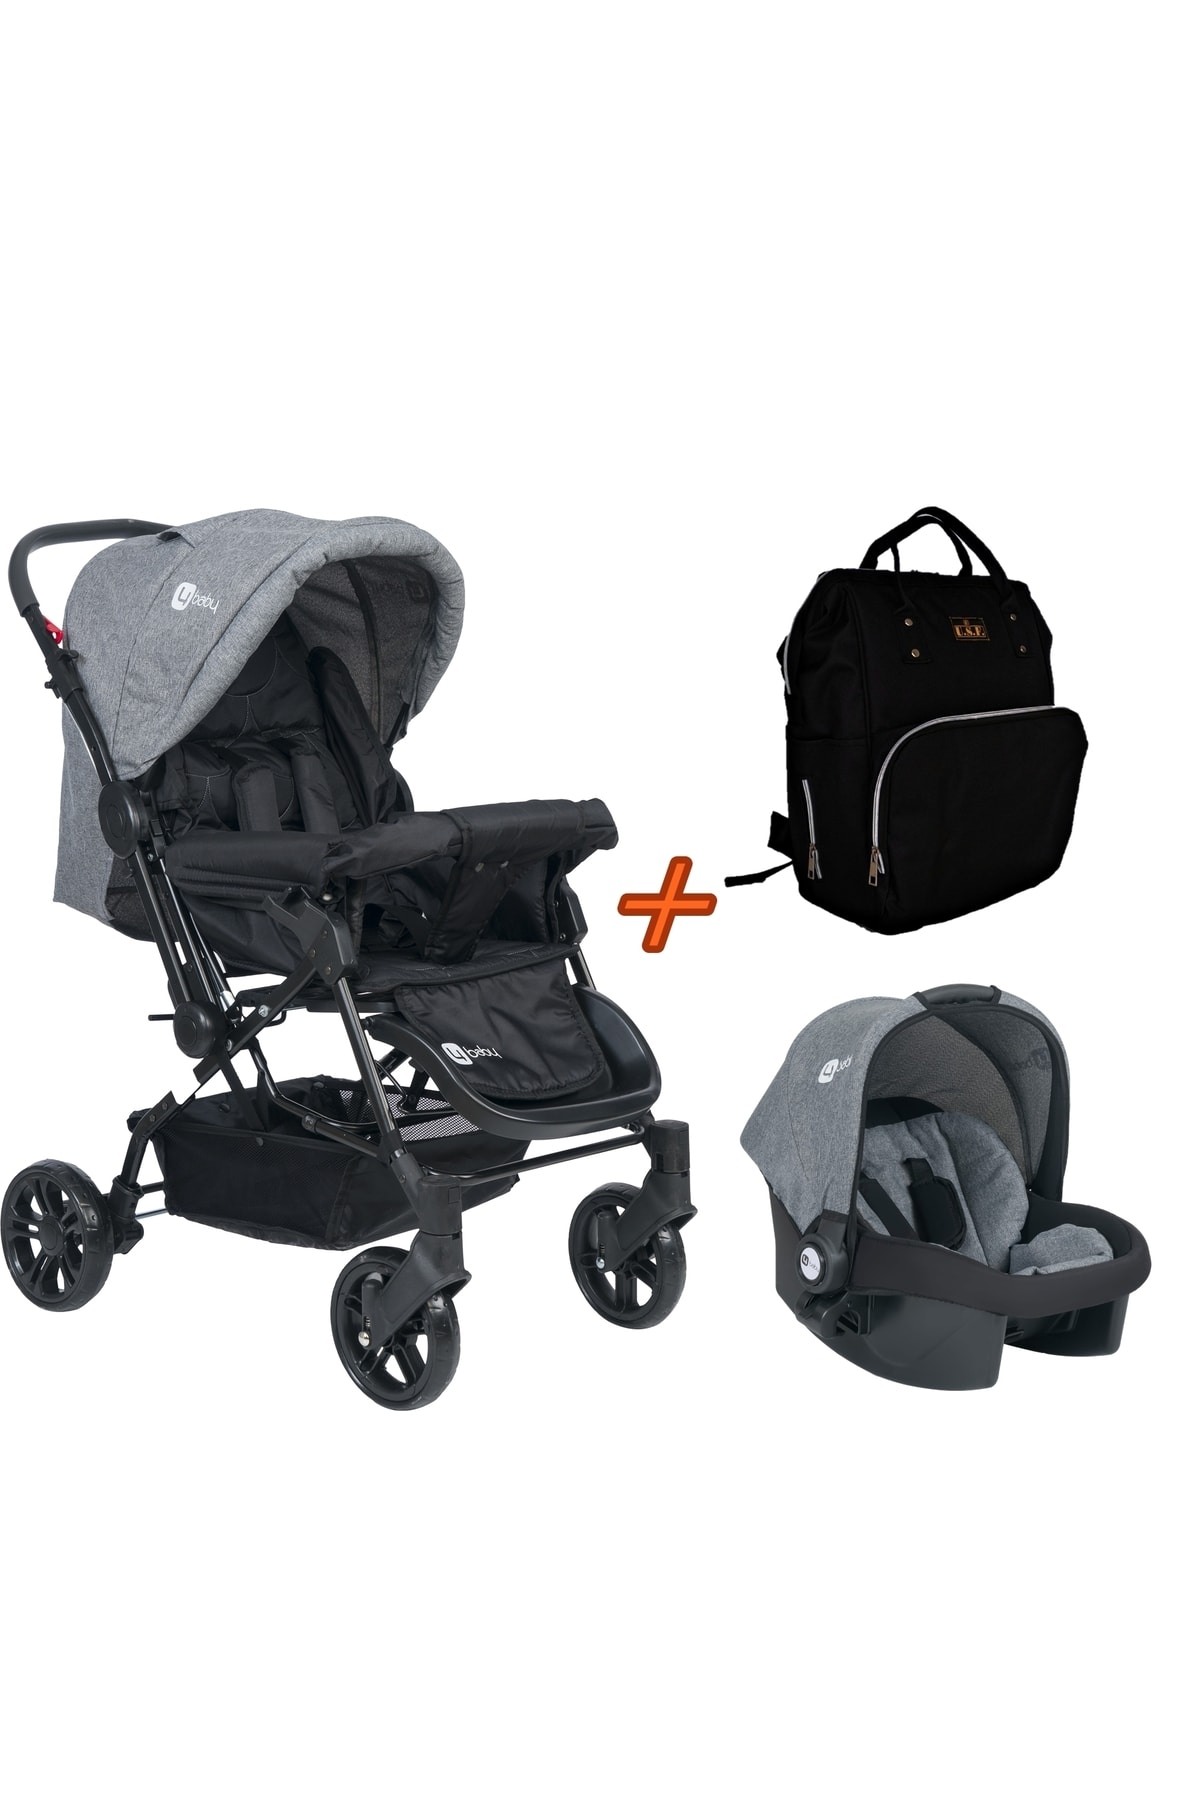 USF Travel Sistem Çift Yönlü Bebek Arabası 4 Baby - Bebek Arabası Gri+Puset+Siyah Çanta NE11579